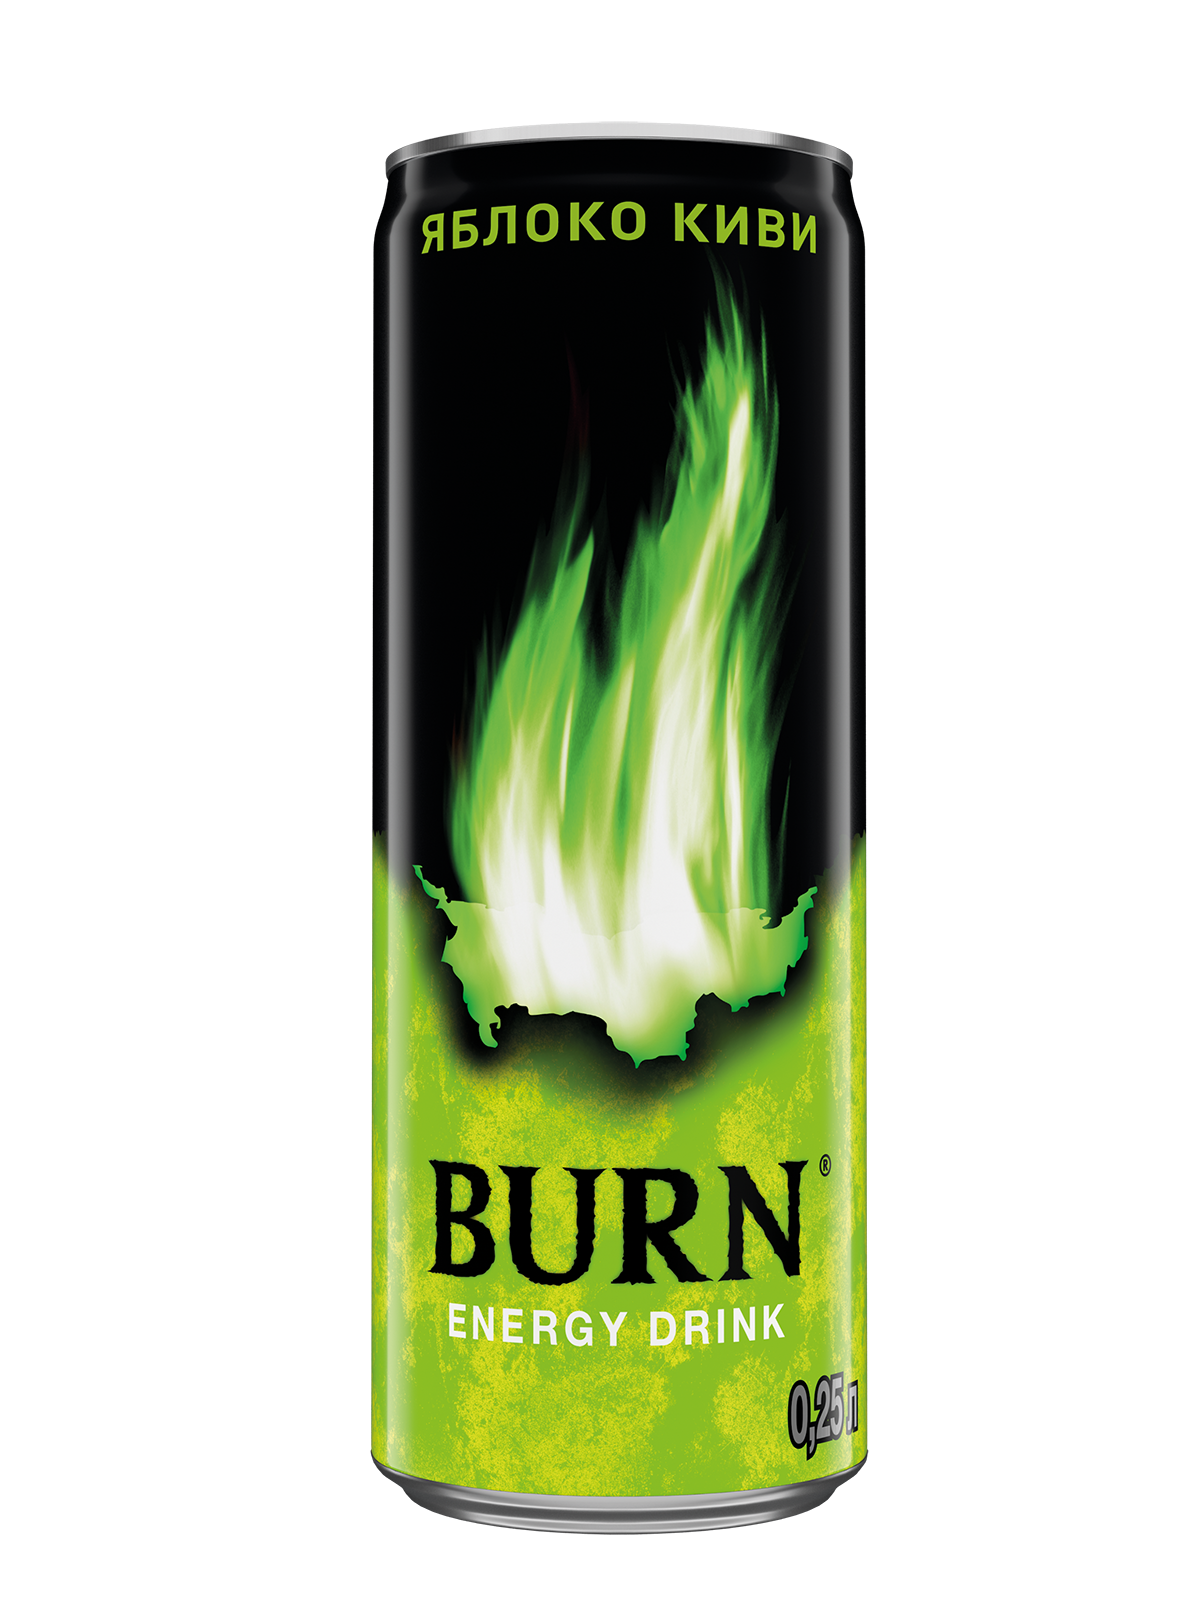 Берн киви. Энергетический напиток "Burn" тёмная энергия 0.449л.. Энергетический напиток Берн 0,449л ж/б. Берн ж/б 0,449л темная энергия. Burn напиток энергетический дарк 0.449.